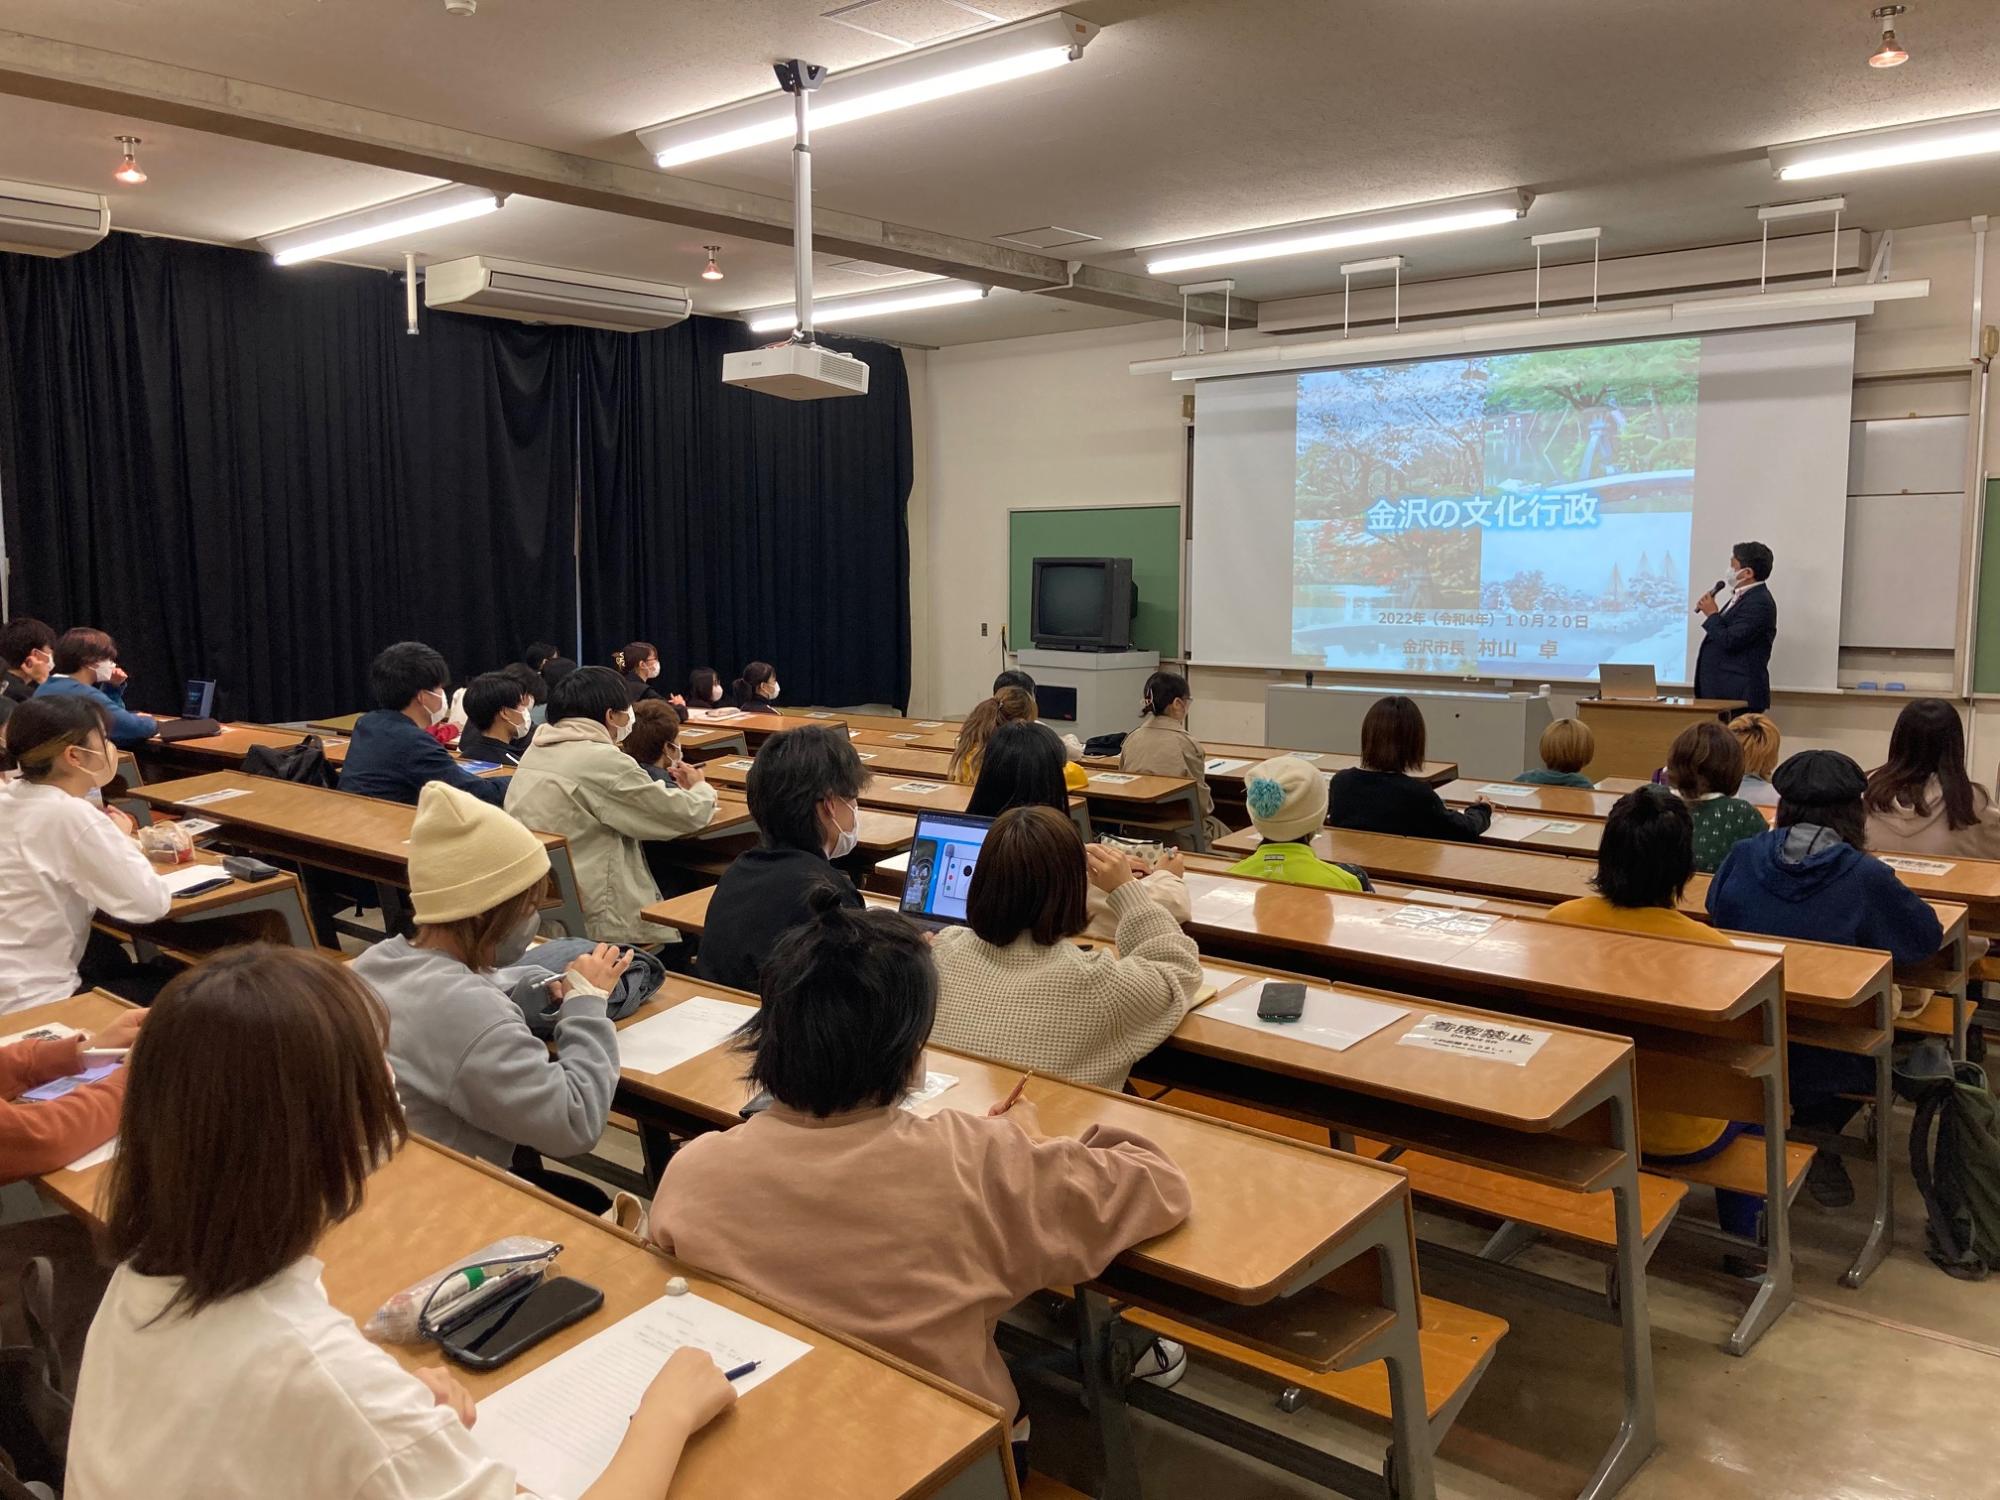 金沢美術工芸大学の現役学生に向けて「金沢の文化行政」についての講義